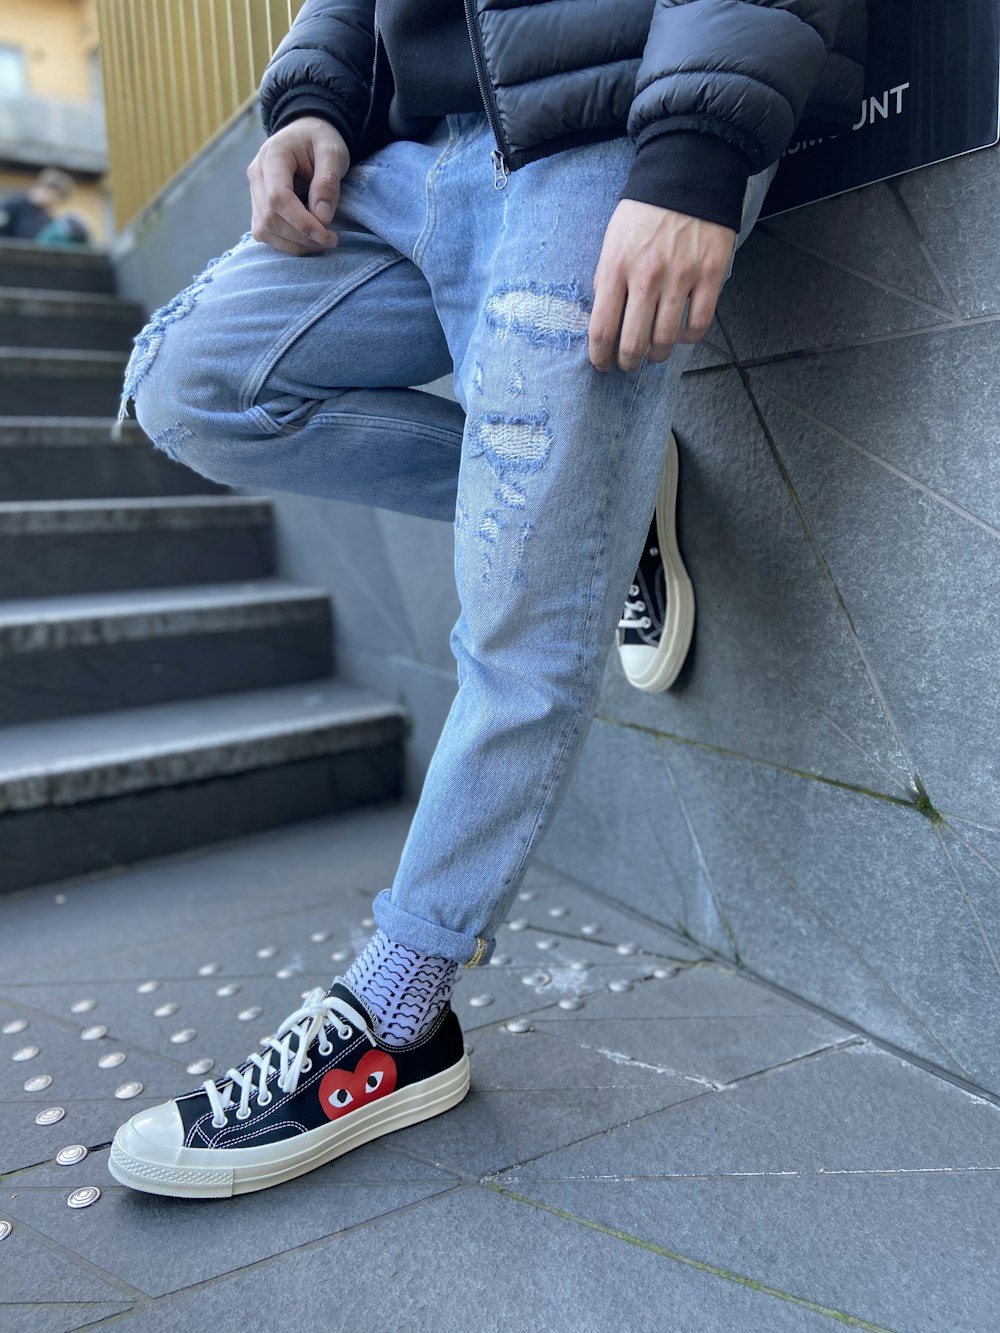 Foto Persona con jeans azules y zapatillas converse all star altas en blanco y negro. – Londres gratis en Unsplash